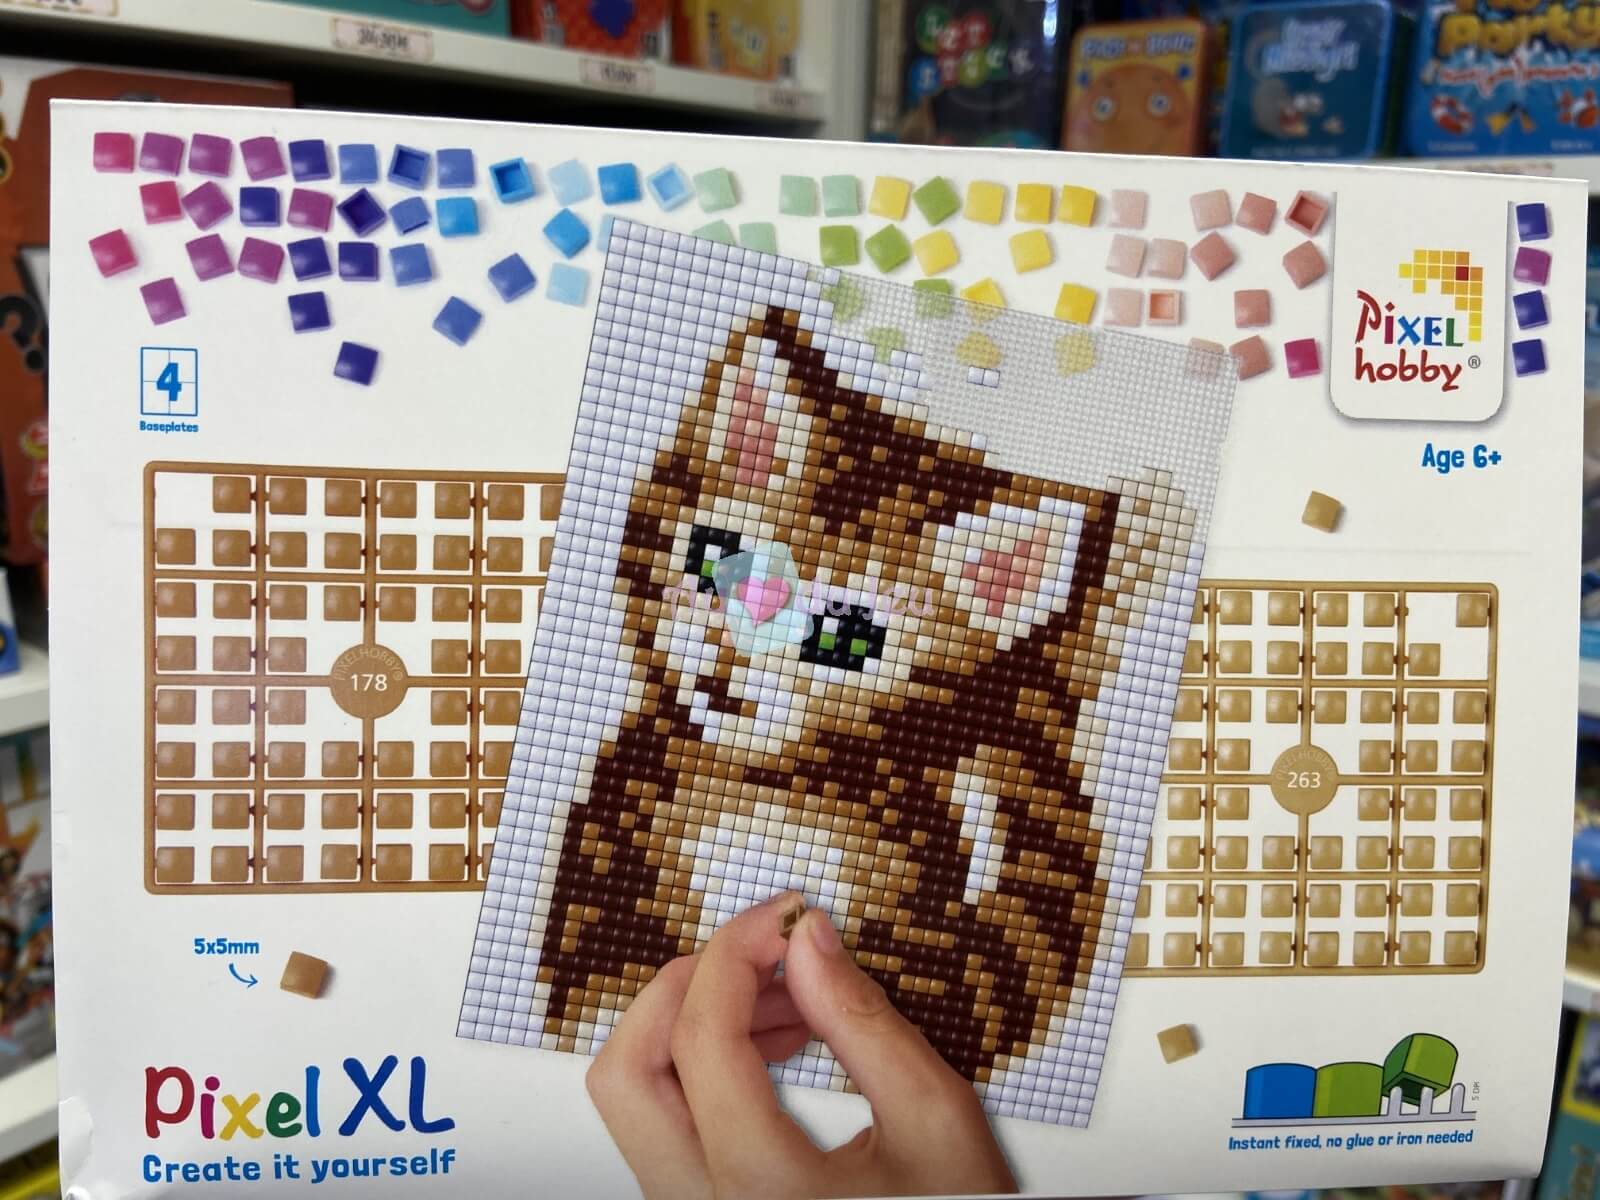 Pixel XL Chat 6+ Pixelhobby